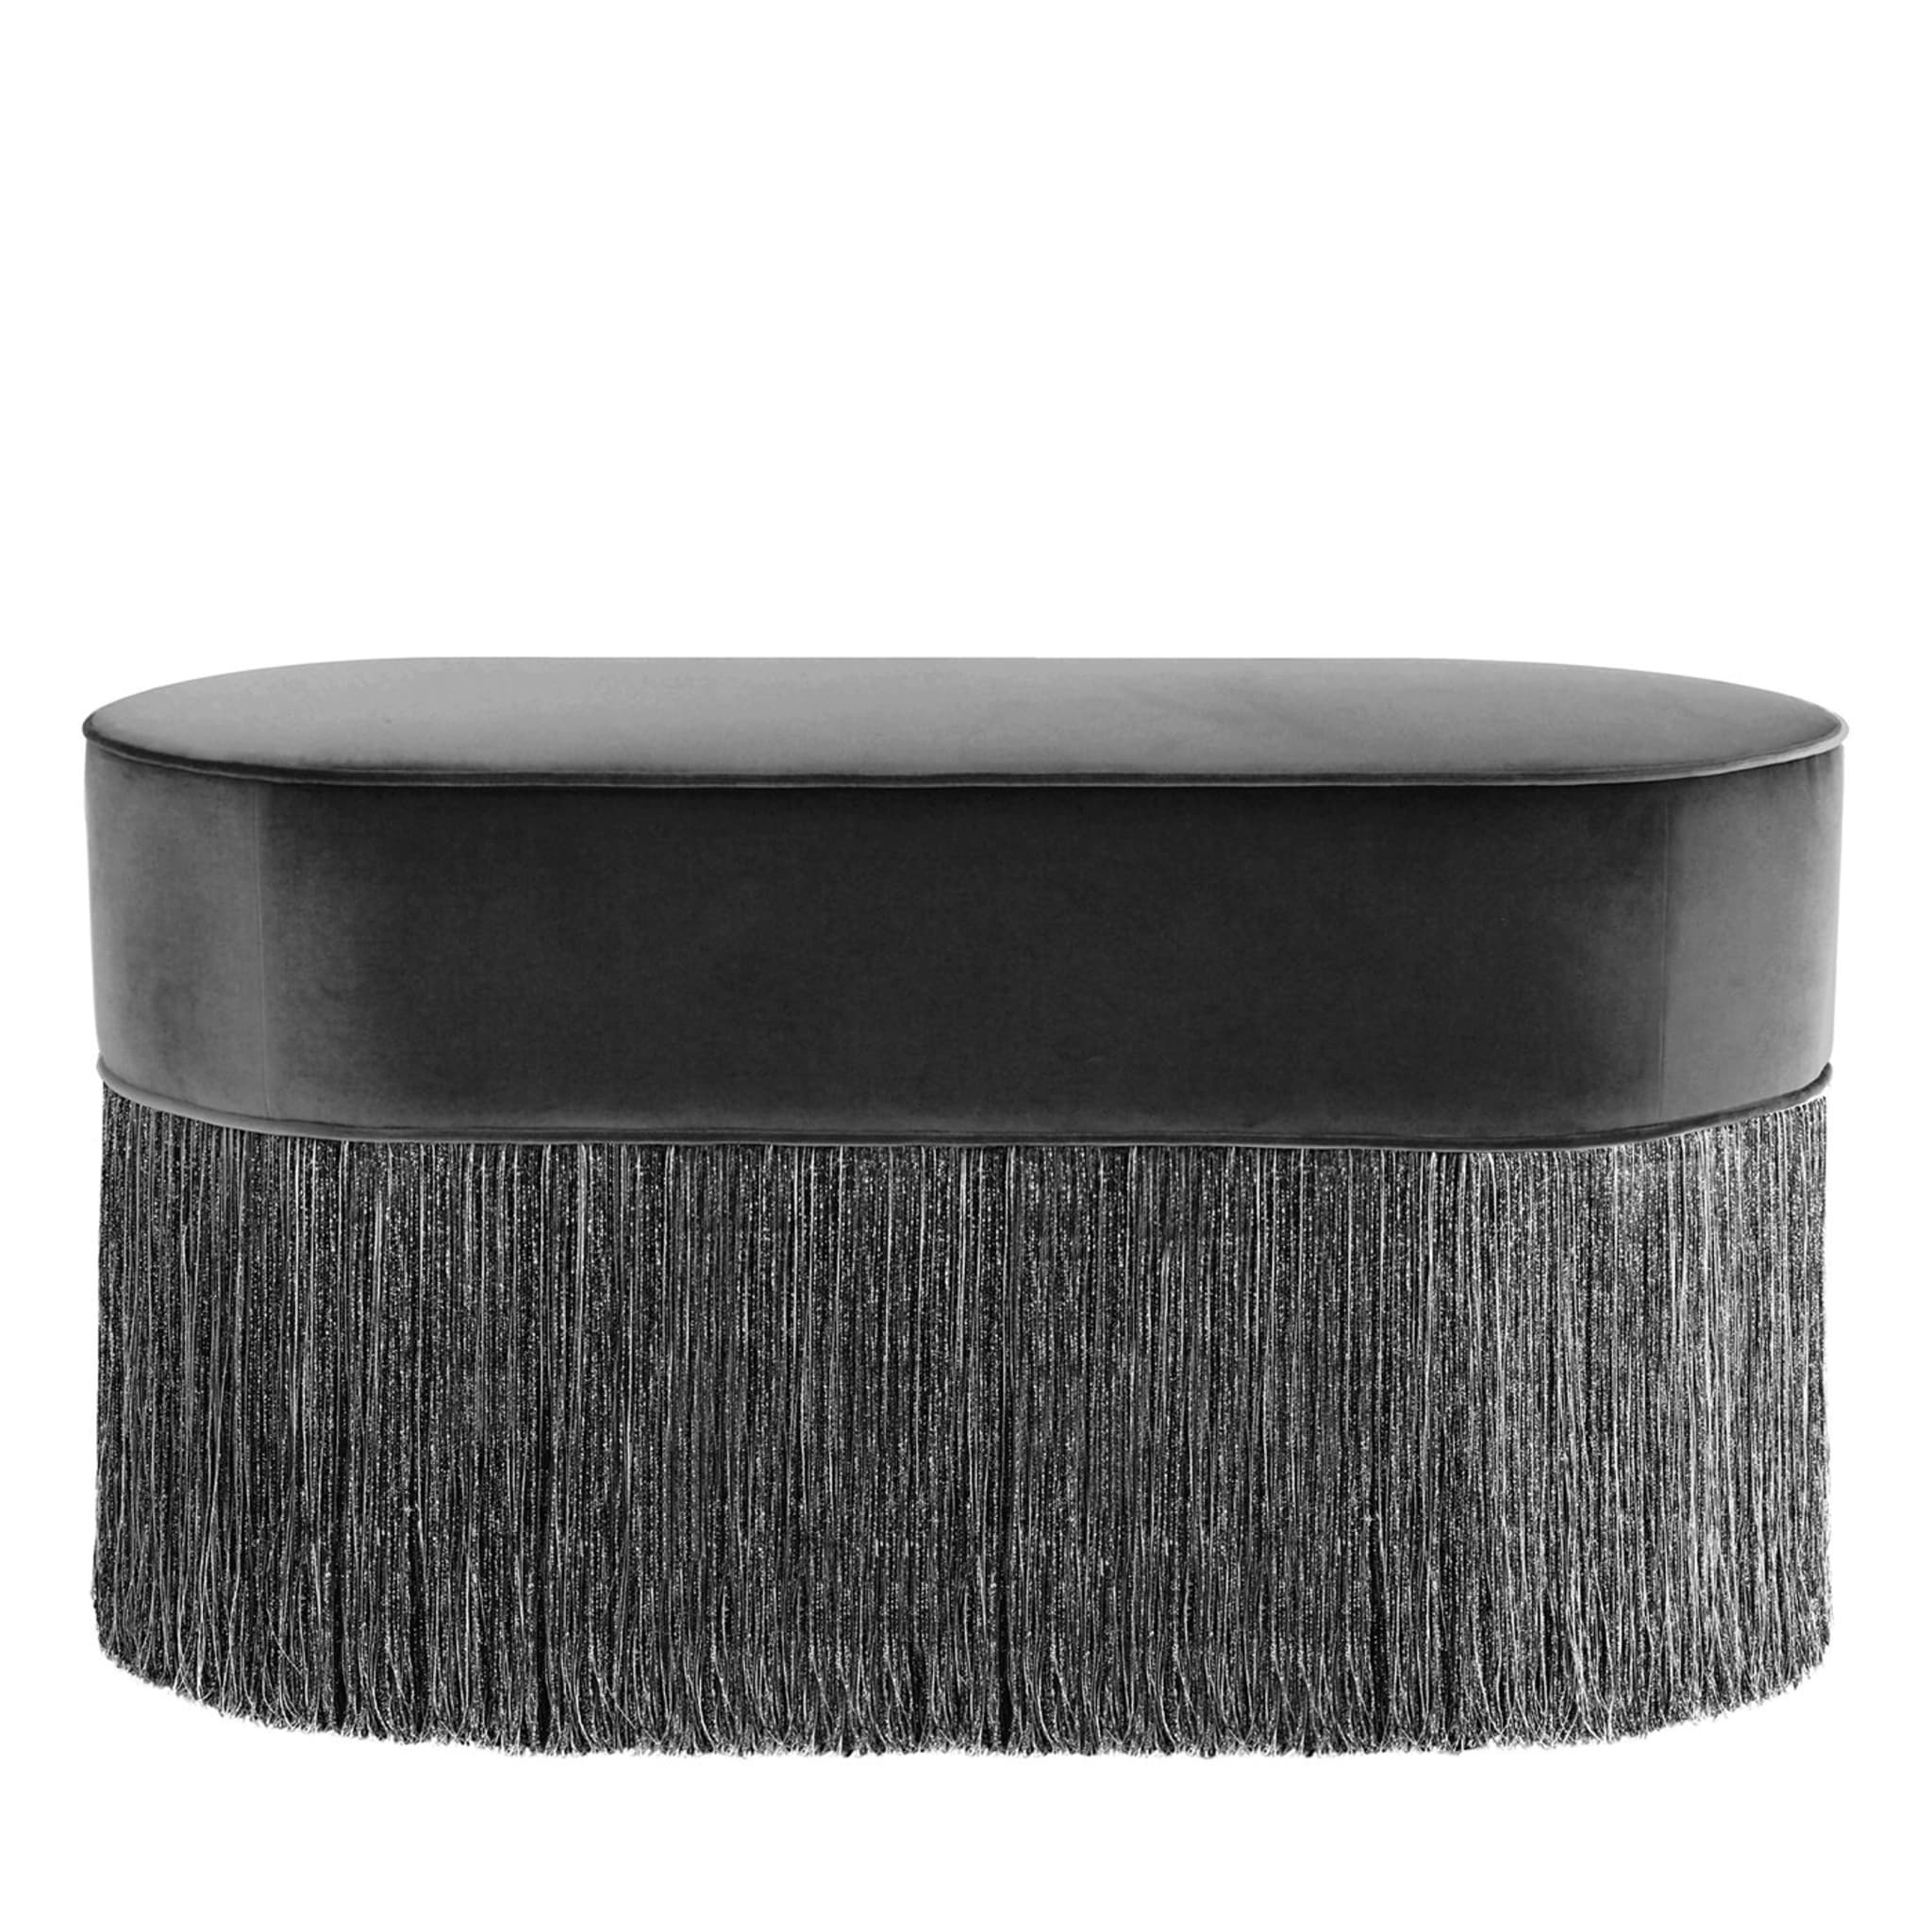 Pouf ovale noir étincelant avec franges noires et argentées - Vue principale